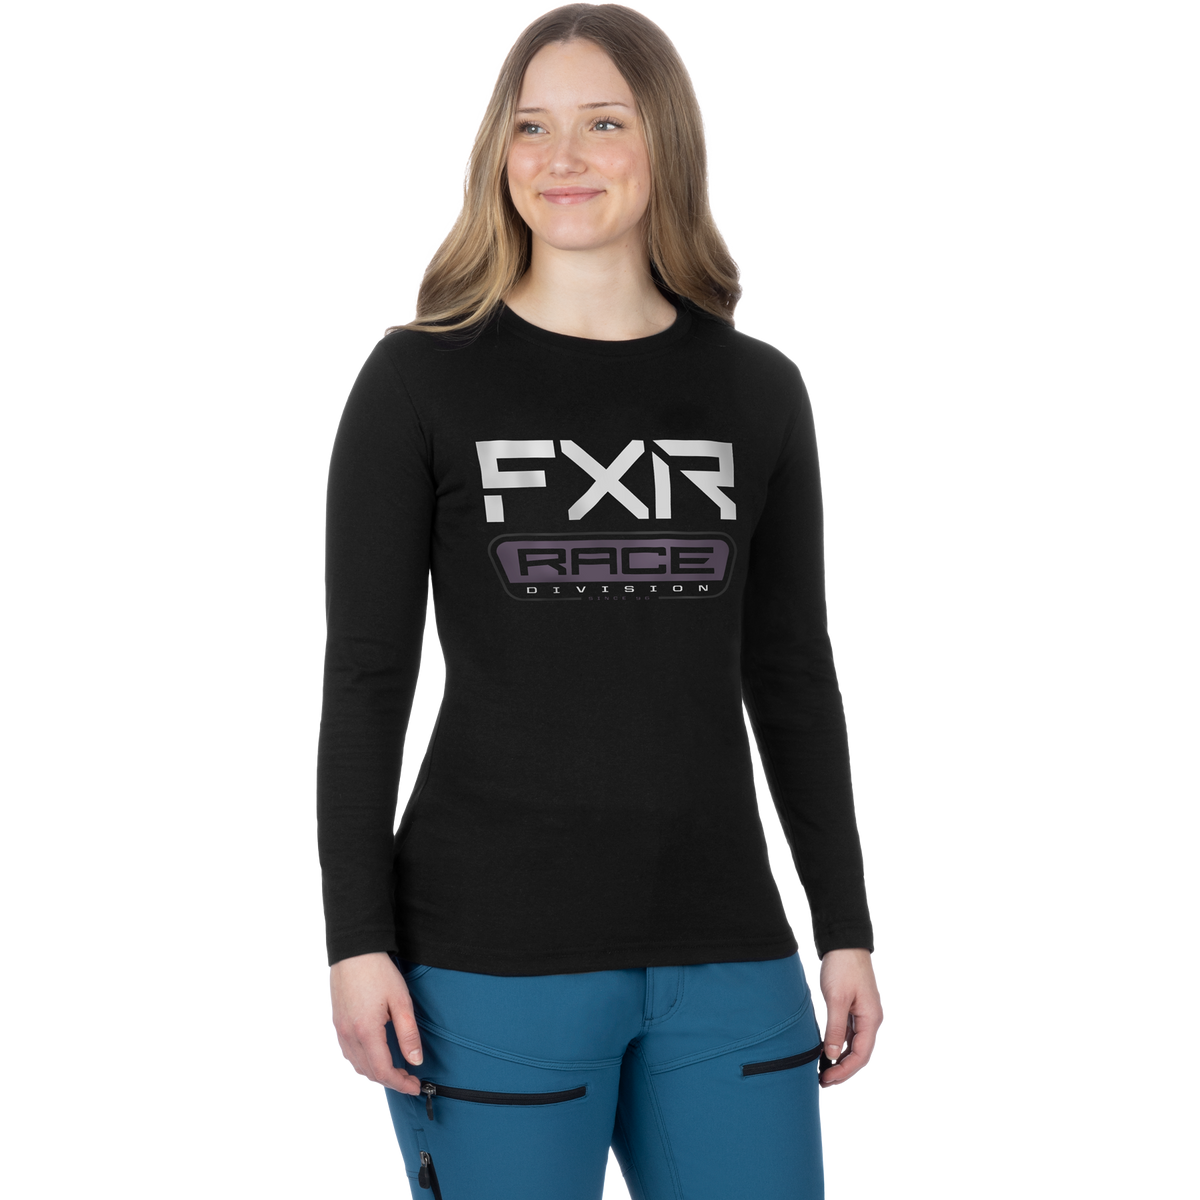 FXR Race Division Premium Chemise à manches longues pour femmes - 2024